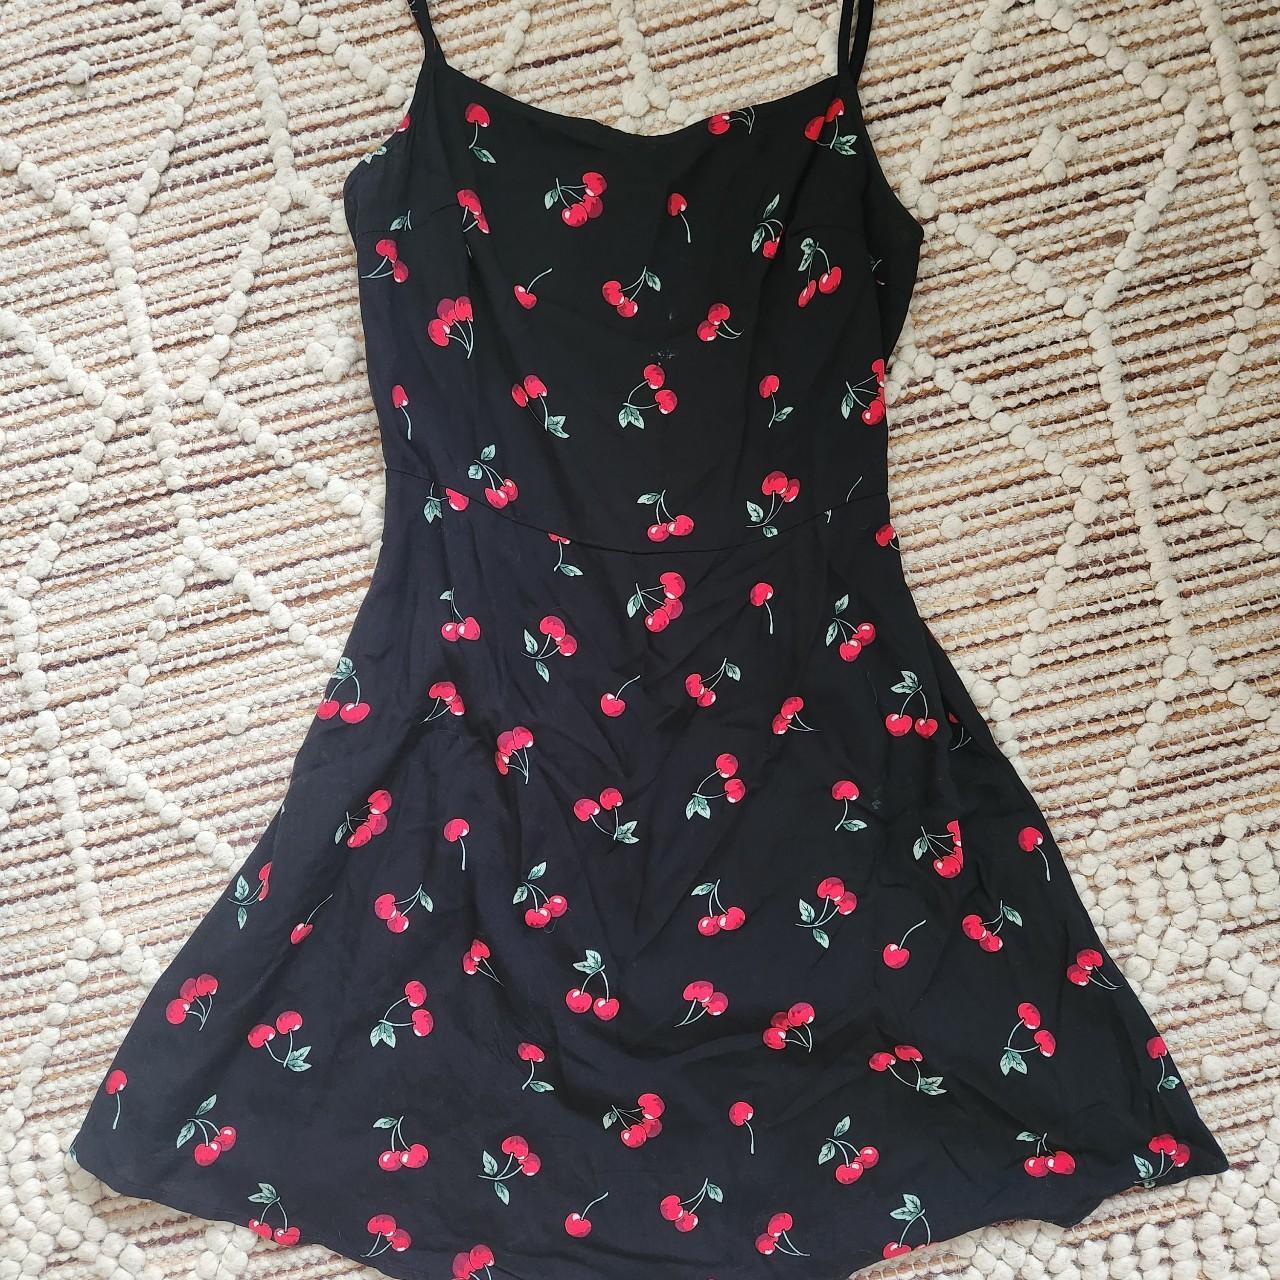 Sexy Cherry Slip Dress 🍒 Y2k all the way! Size -... - Depop